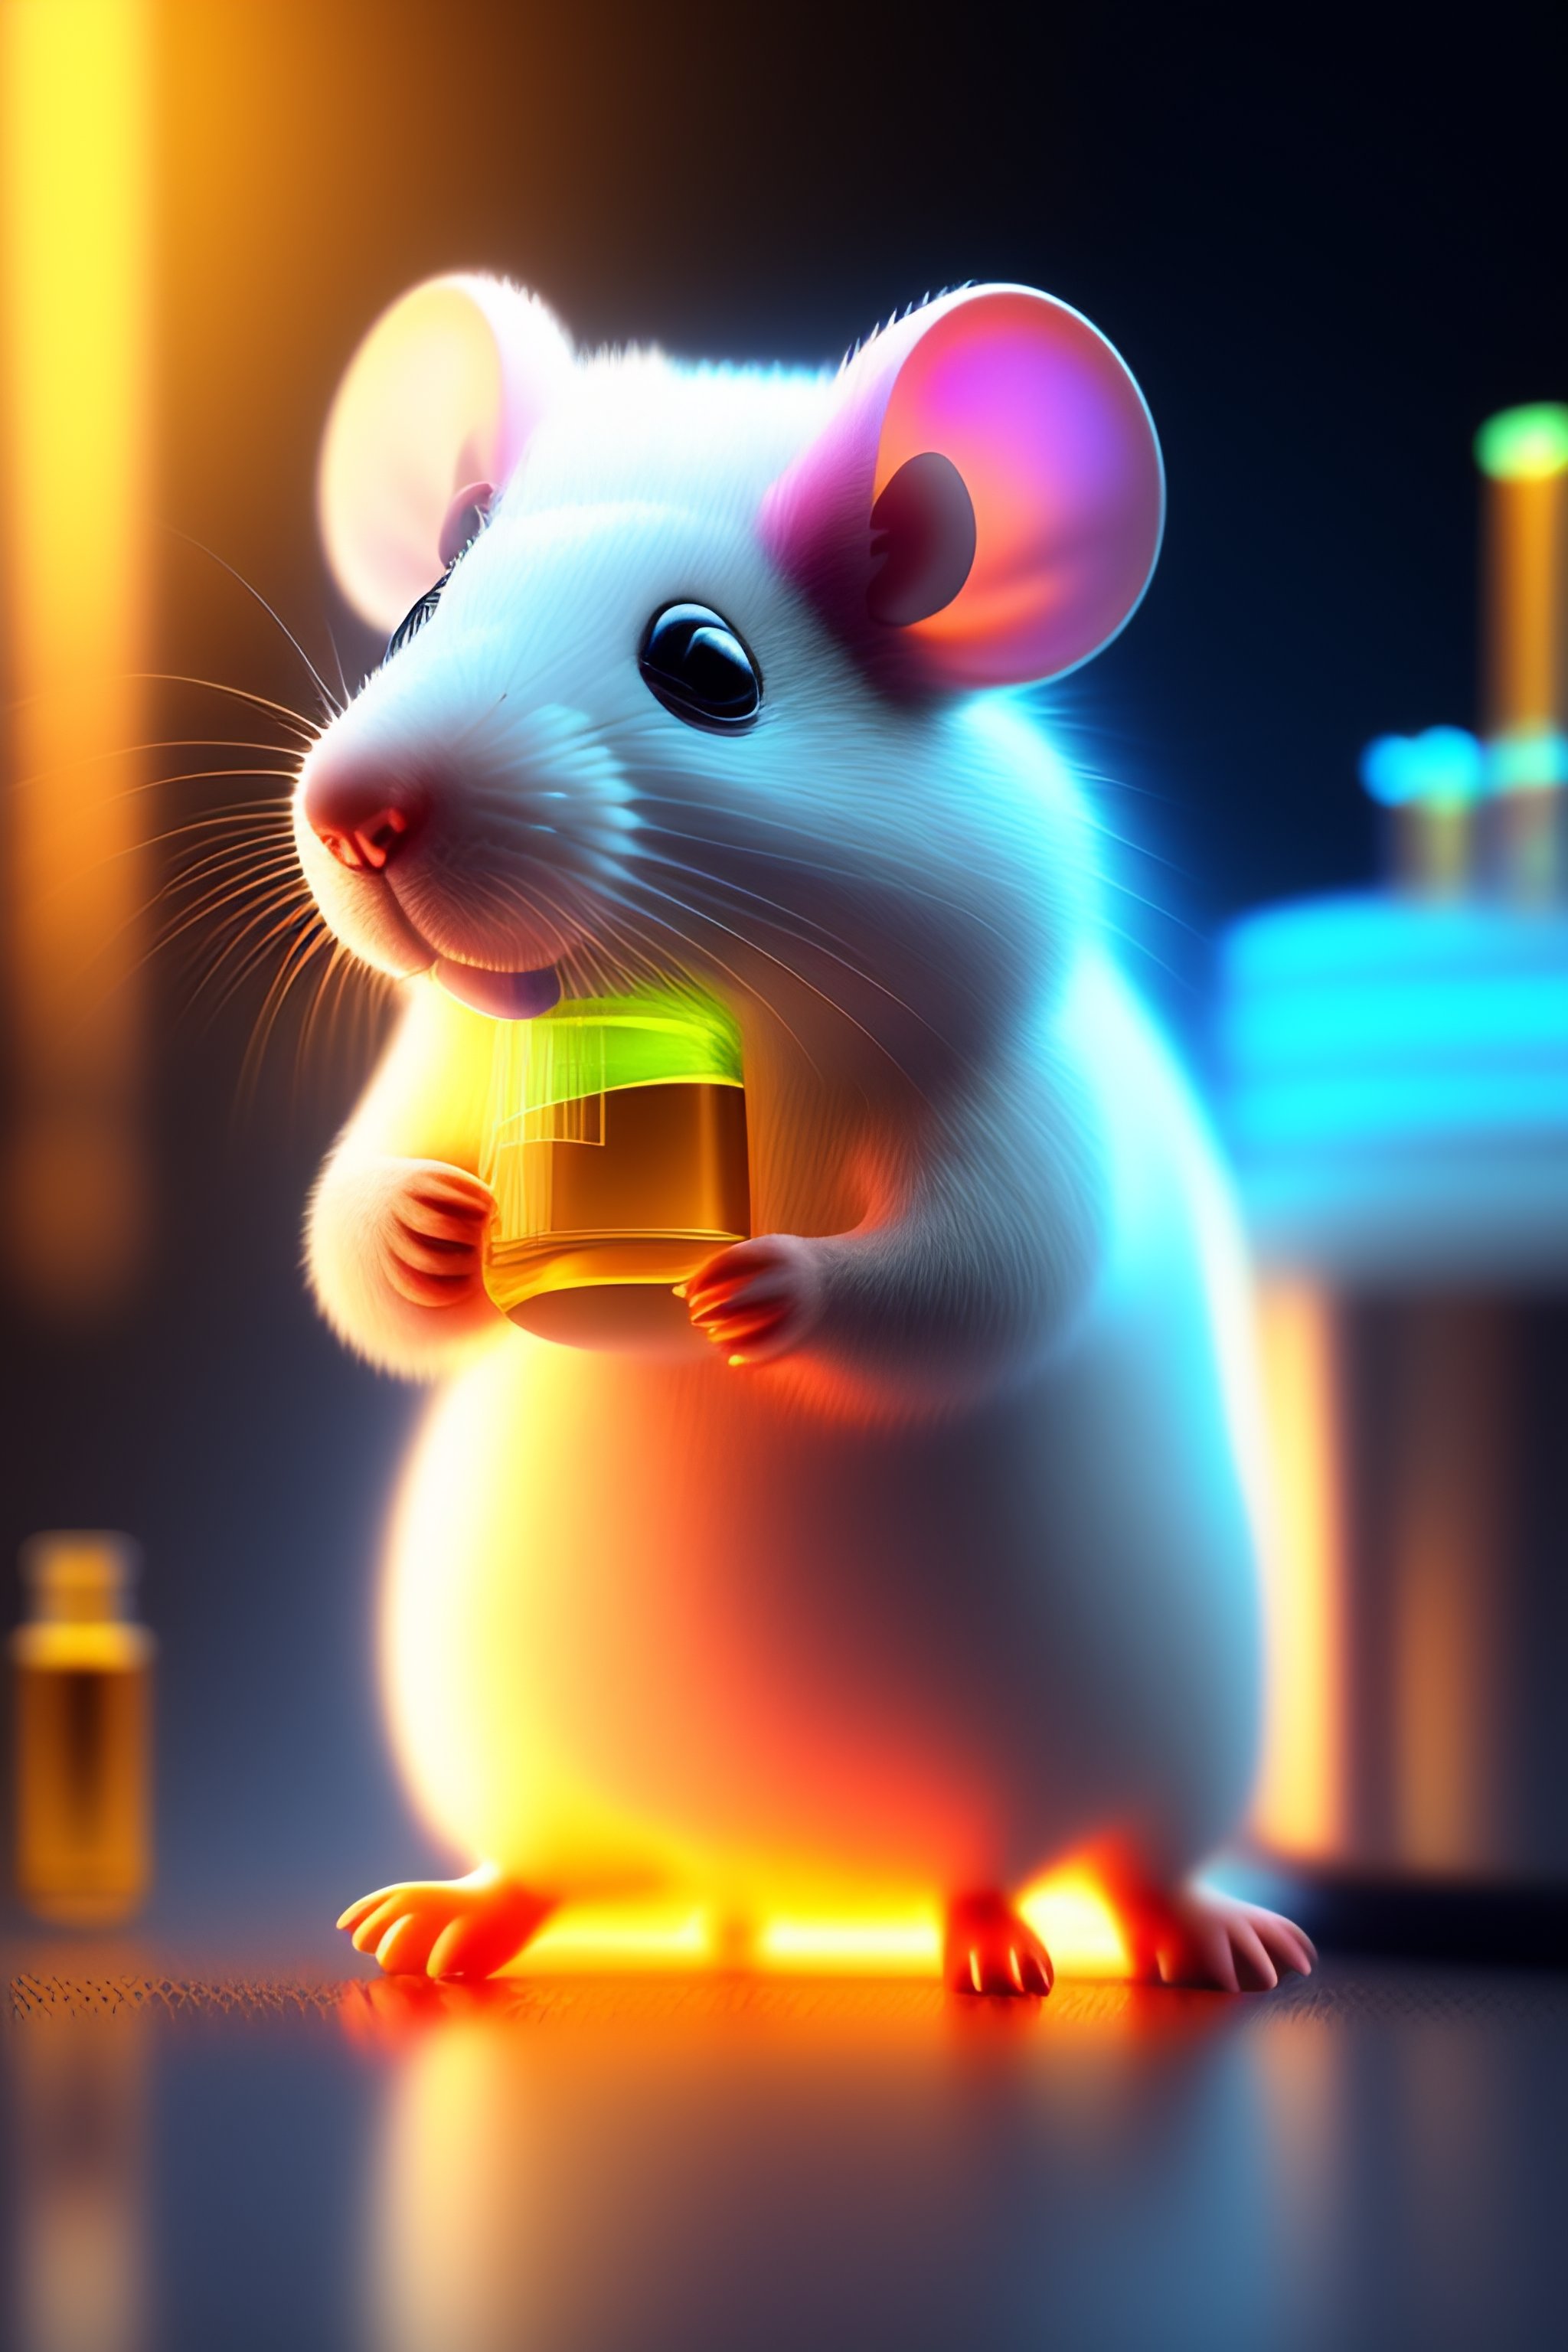 Lab mouse enjoying Koolaid. Imagined by Lexica.